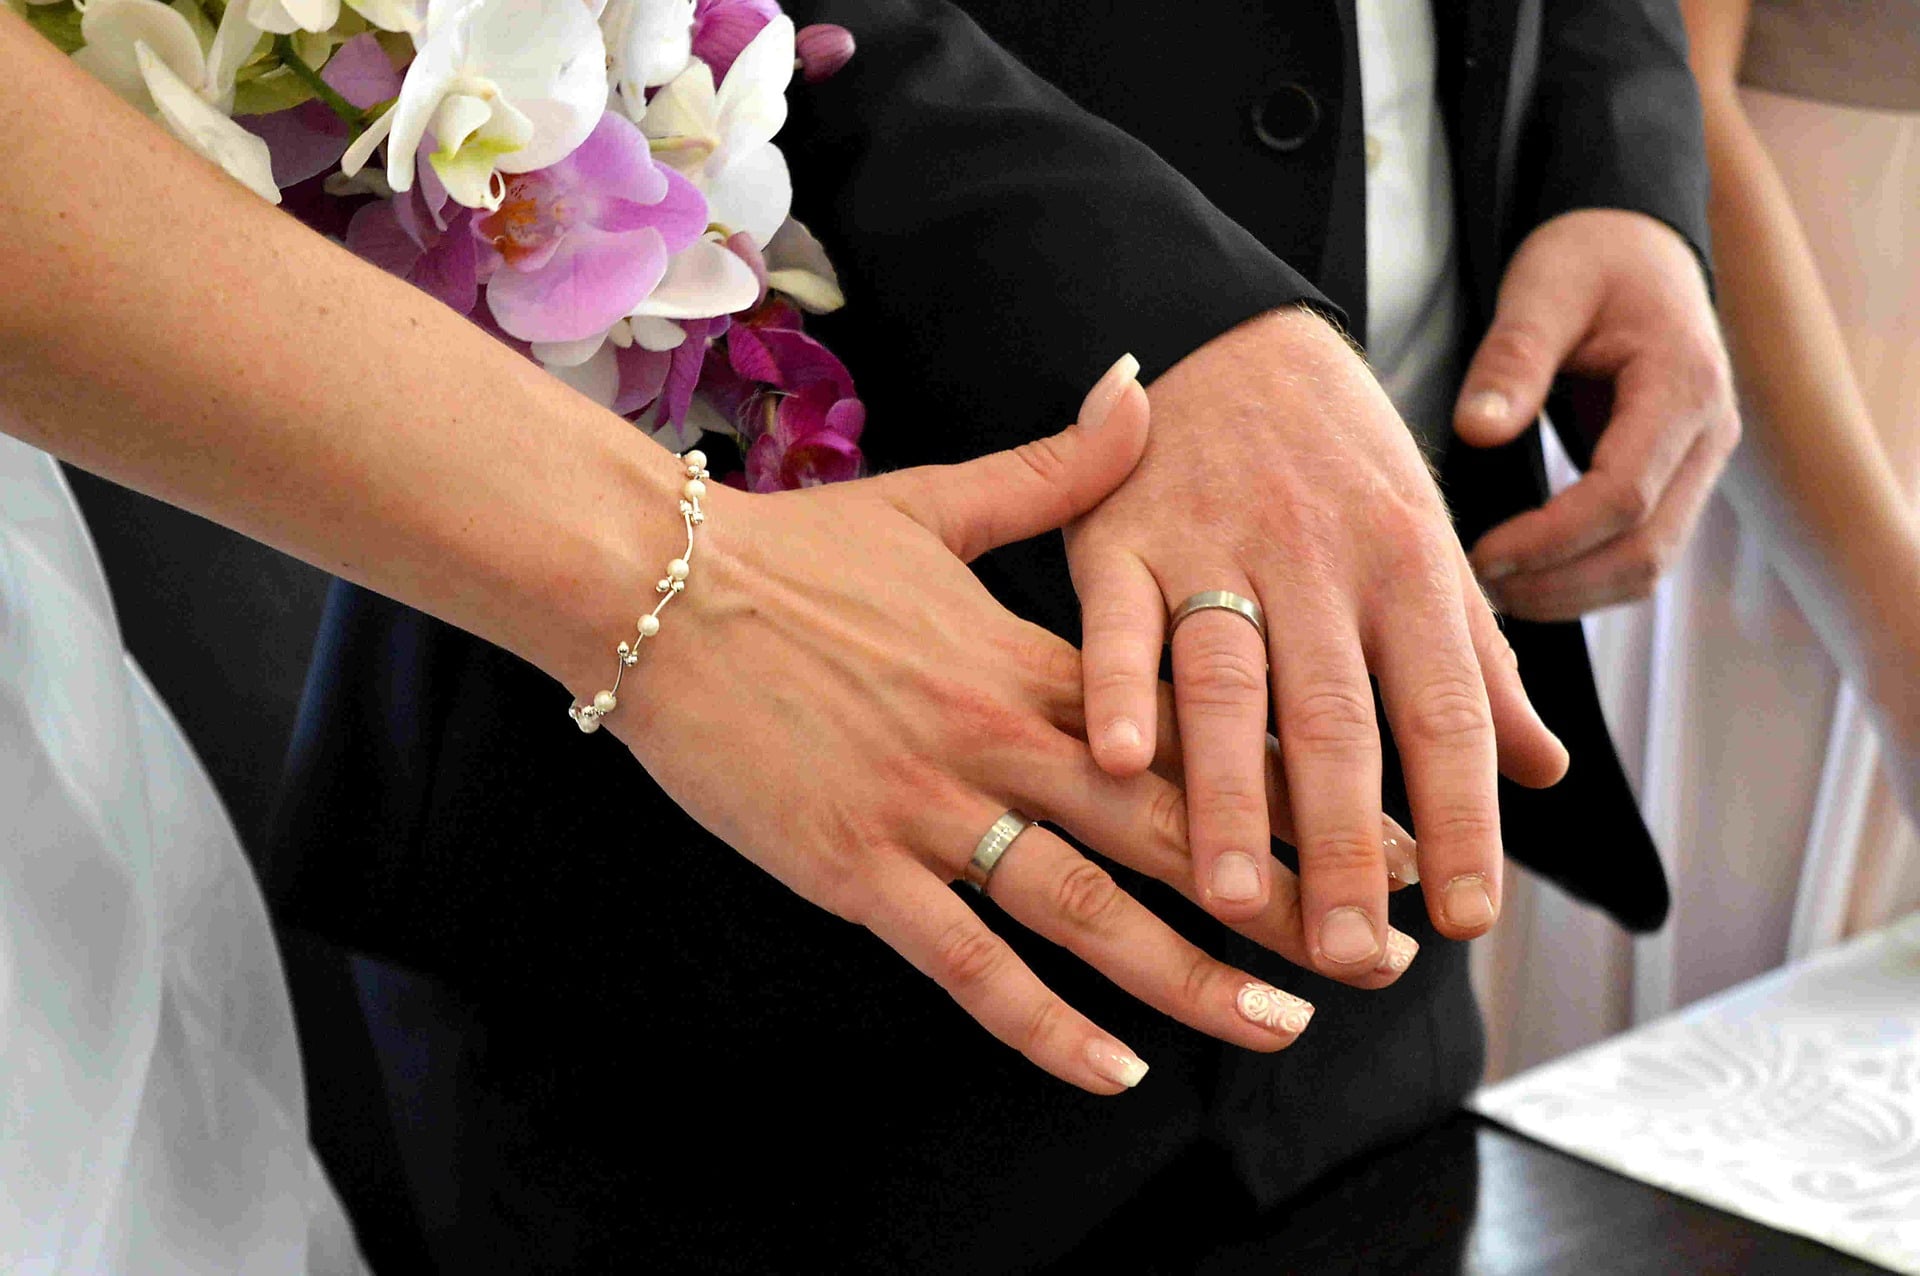 Замуж на какую руку кольцо. Обручальные кольца на руках. Свадебные кольца на руках. Кольца жениха и невесты. Свадьба руки с кольцами.